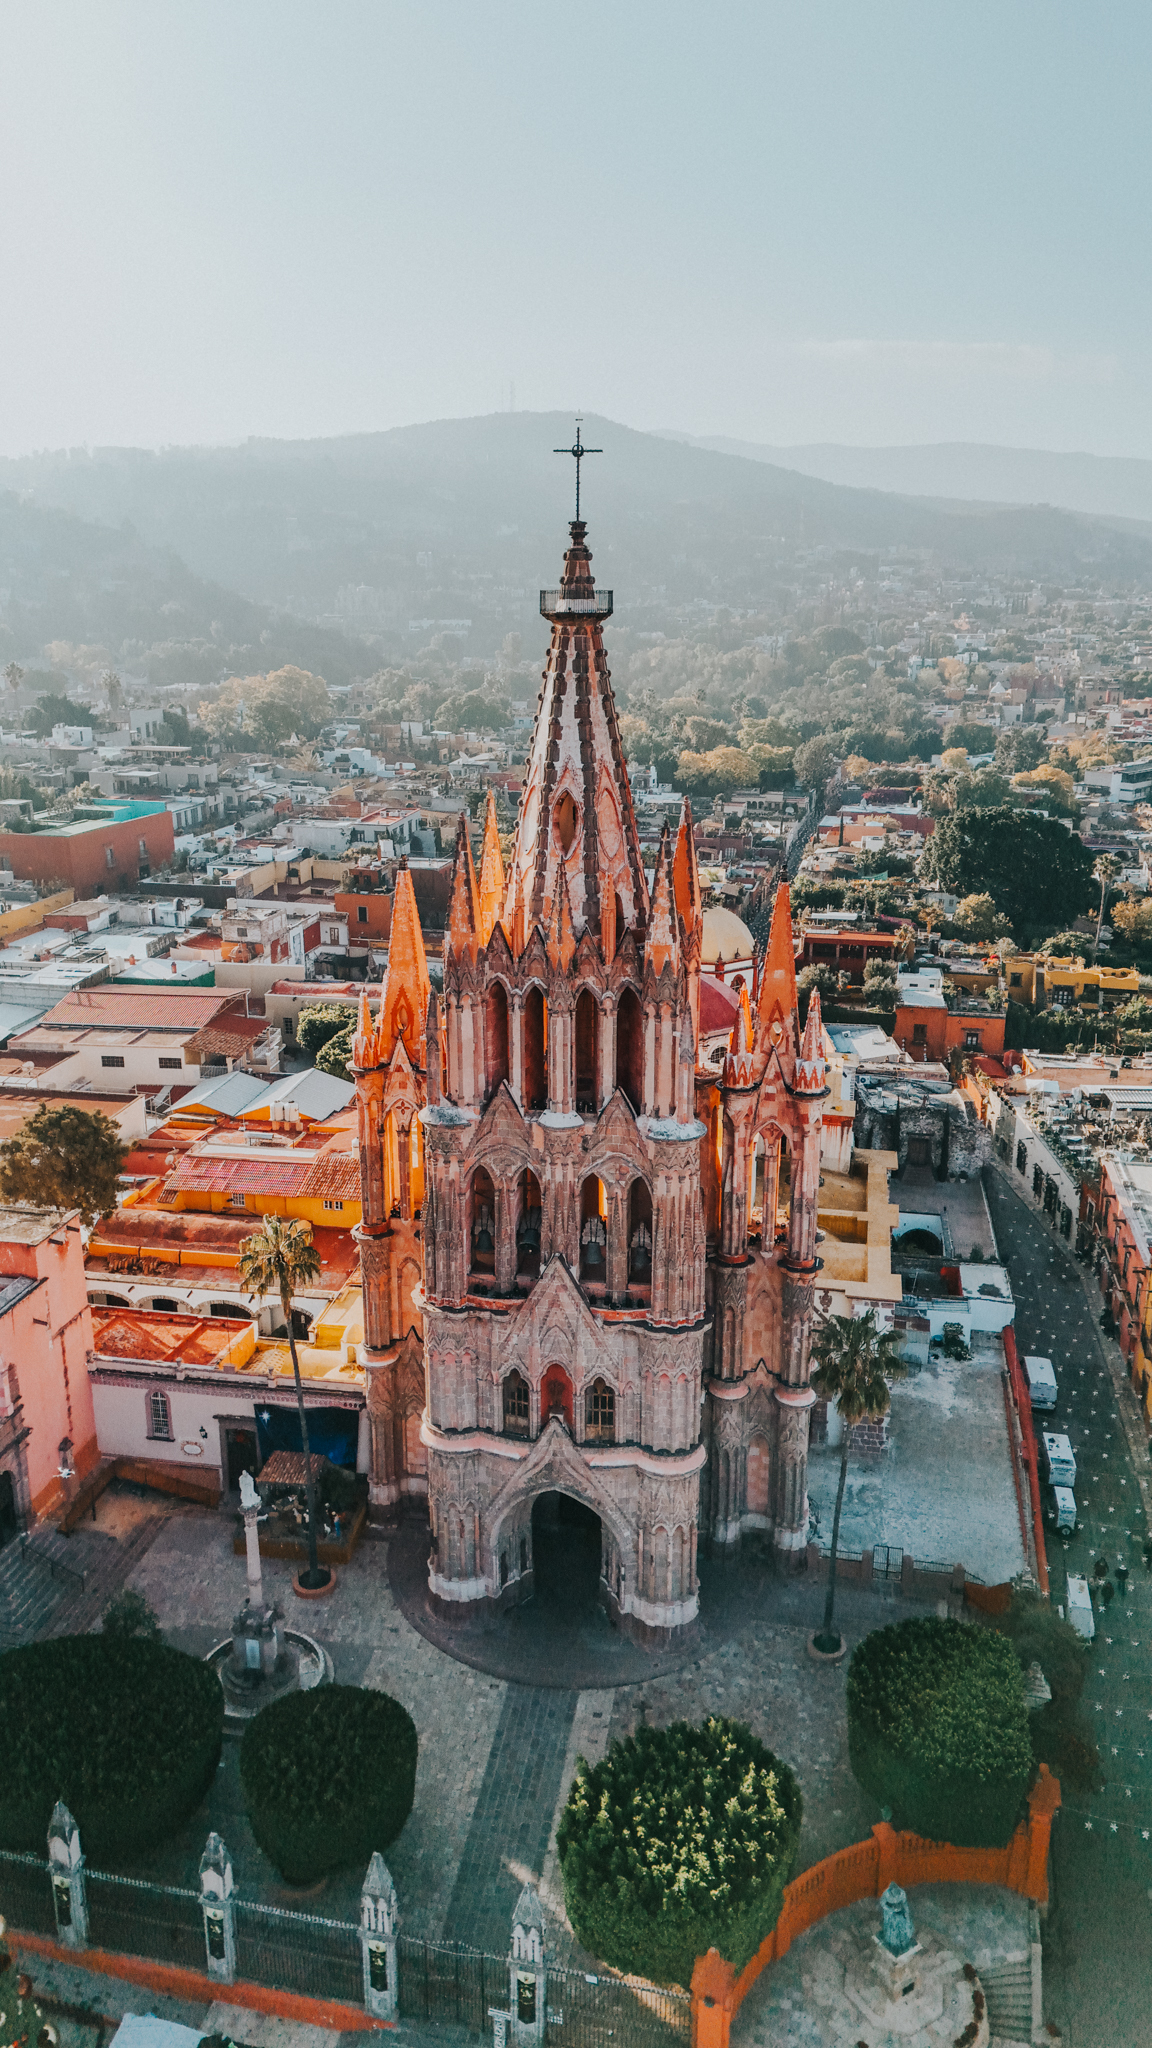 4 days in San Miguel de Allende, Mexico